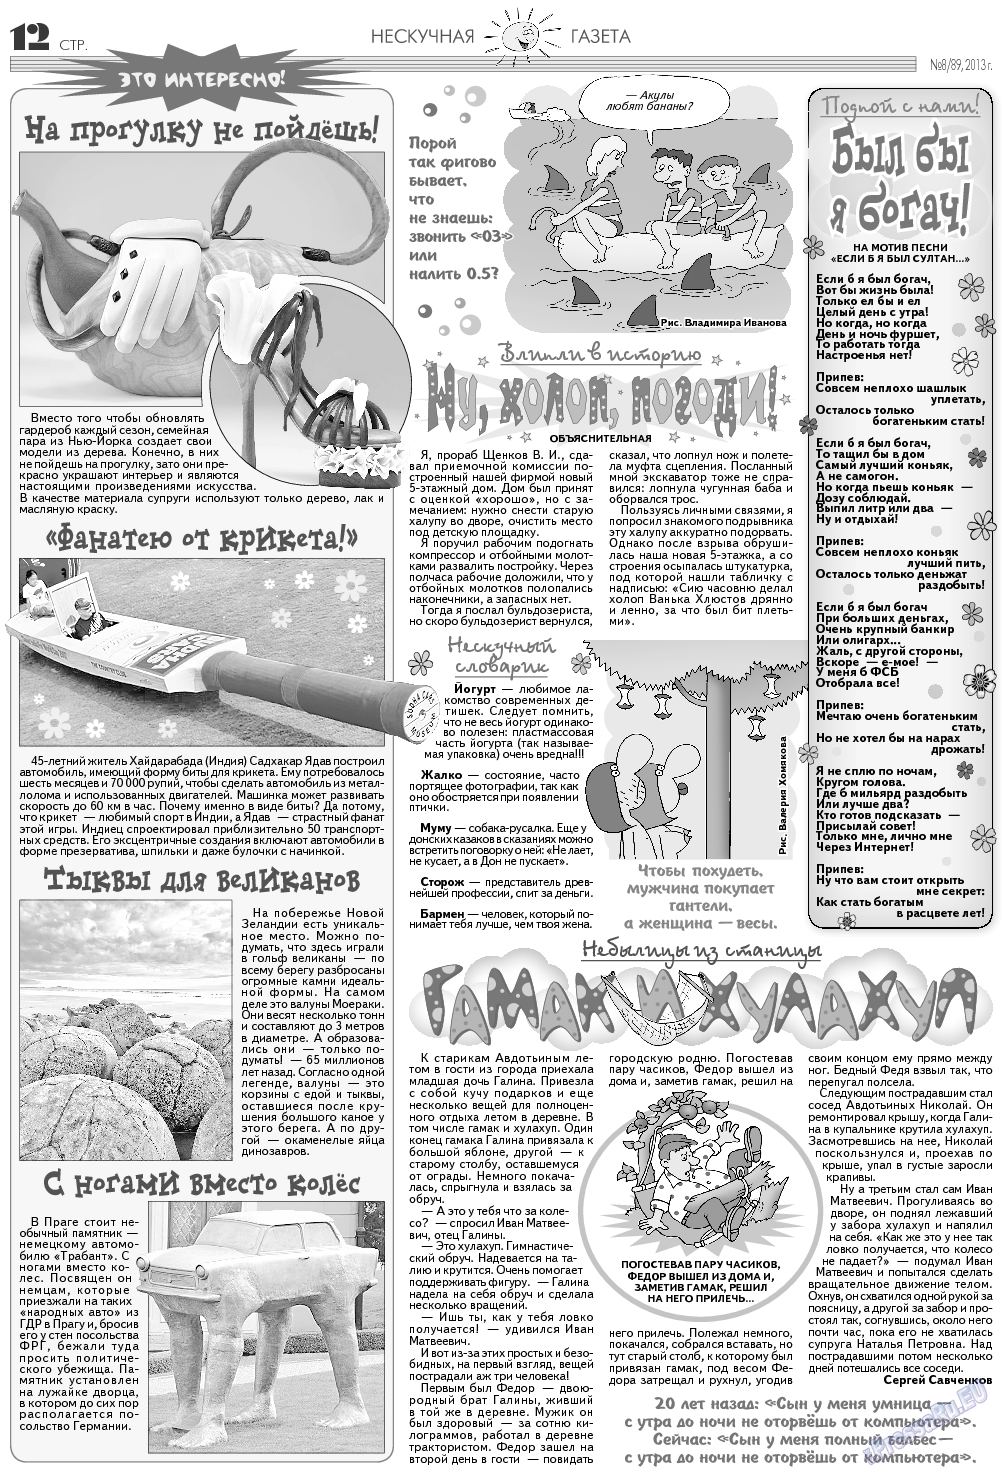 Нескучная газета, журнал. 2013 №8 стр.12